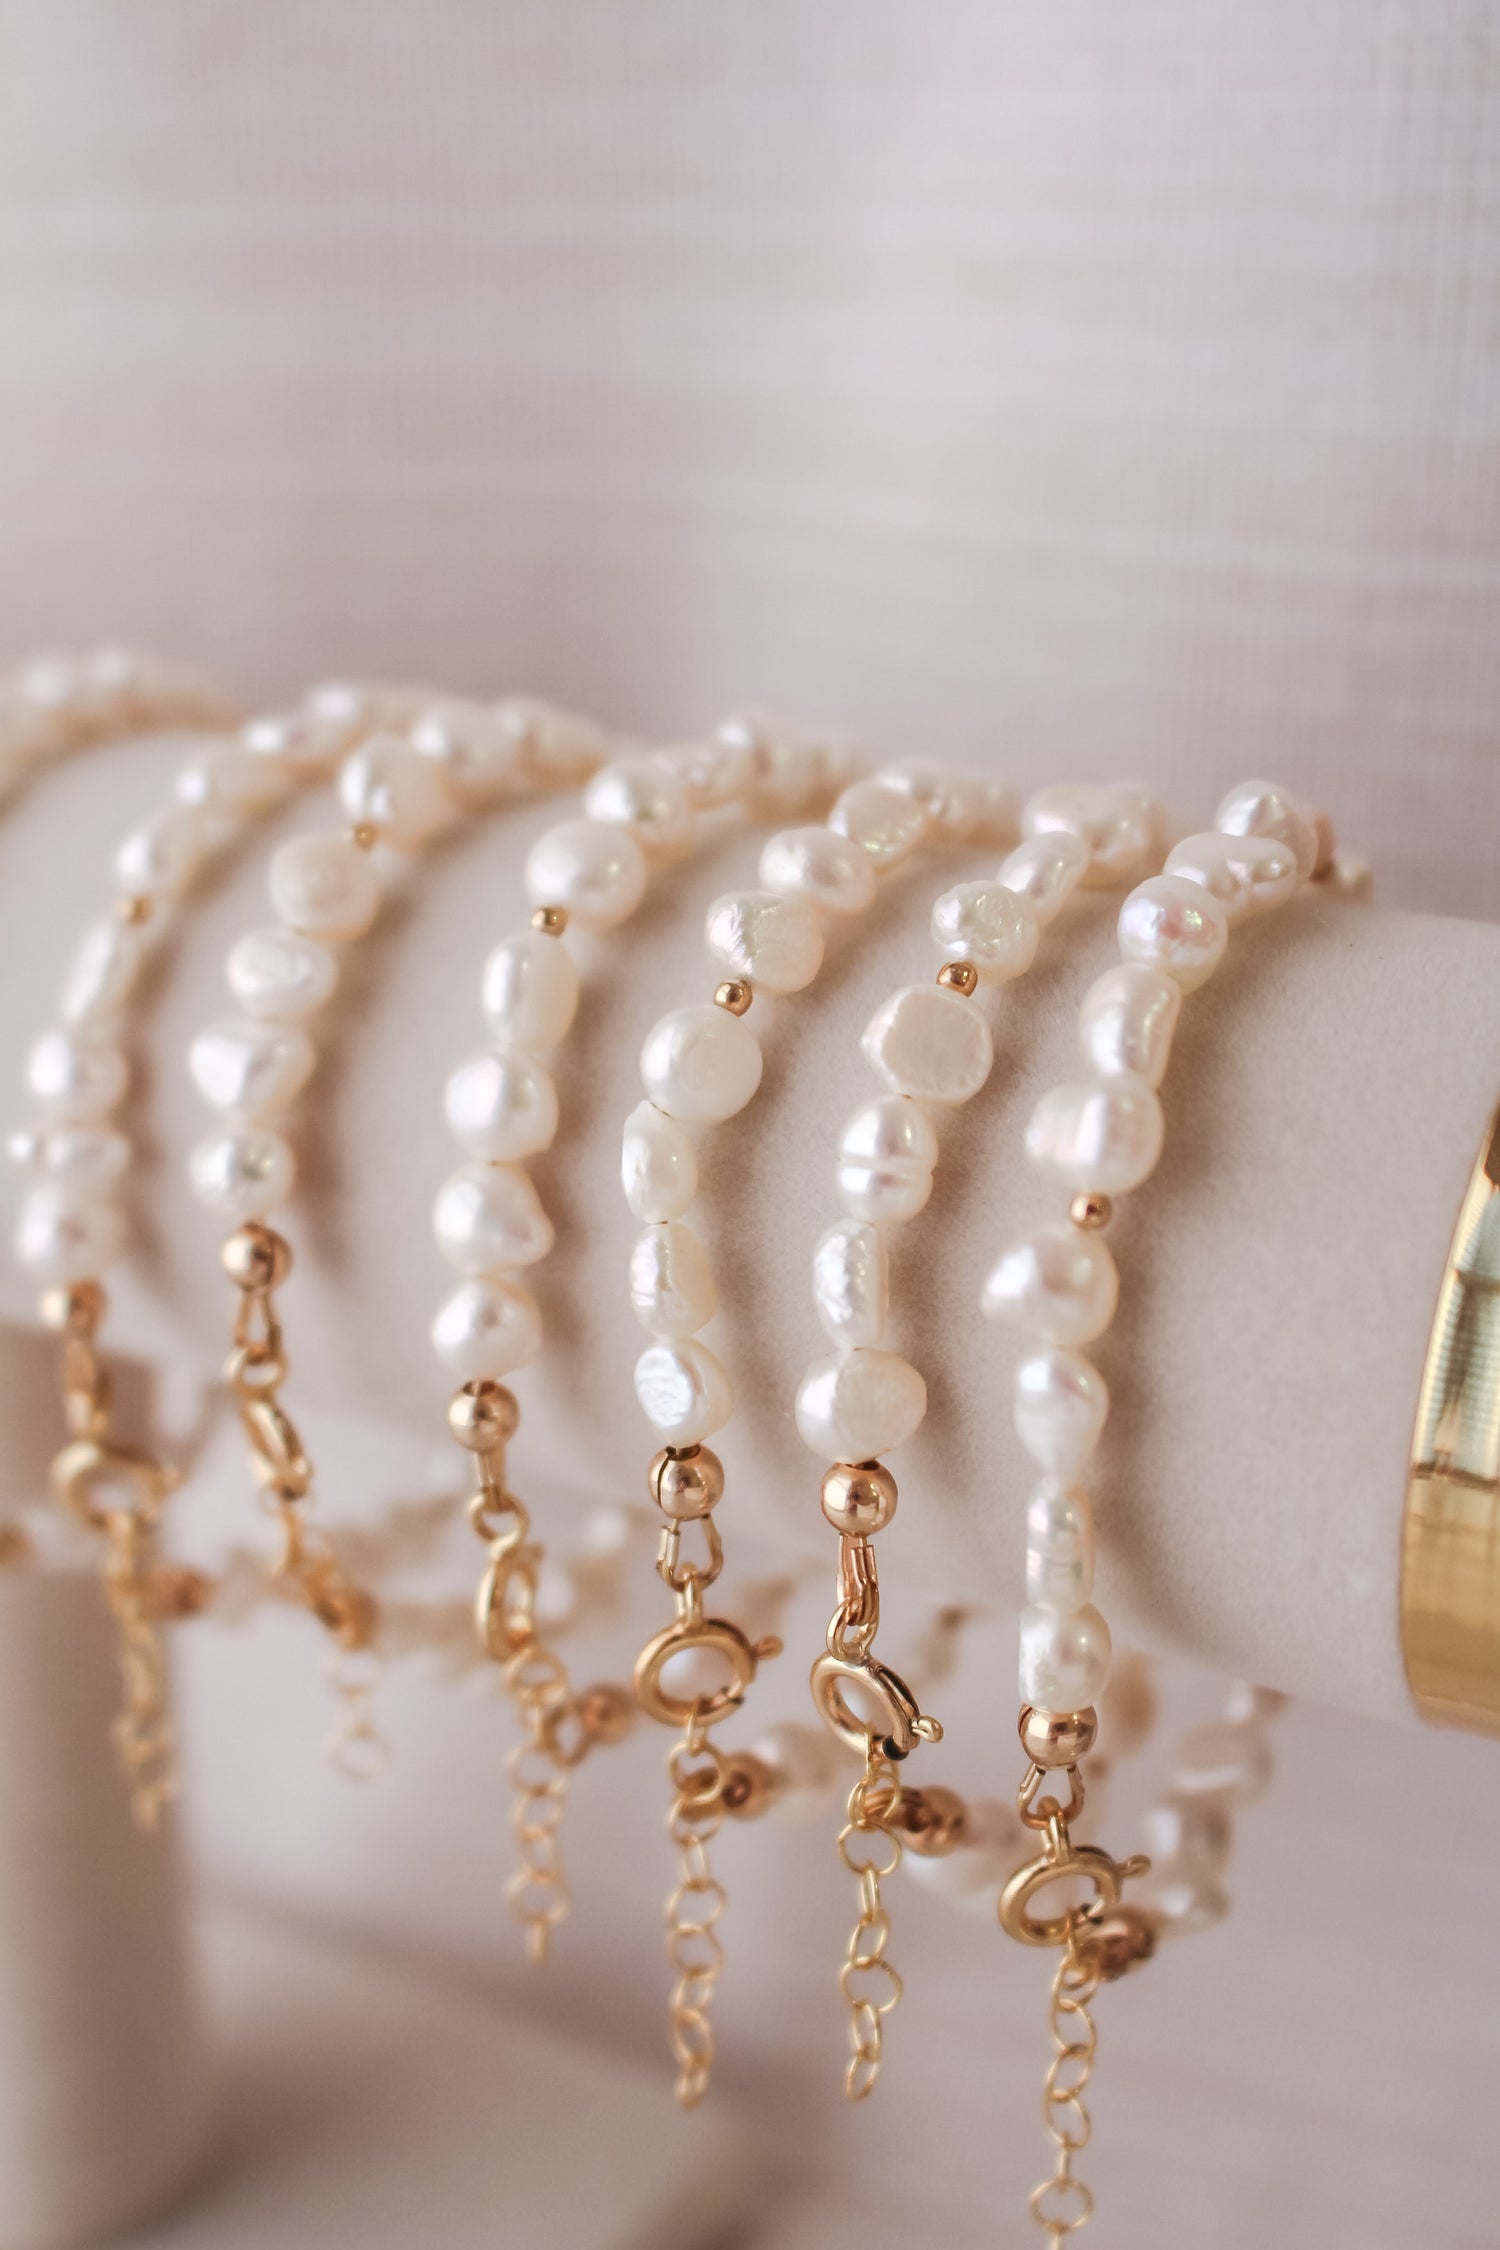 Sand + Salt Pearl pendant, 14k gold-filled necklace.  Hanging in front of an ocean backdrop. Sand + Salt Studio / Sand and Salt Studio